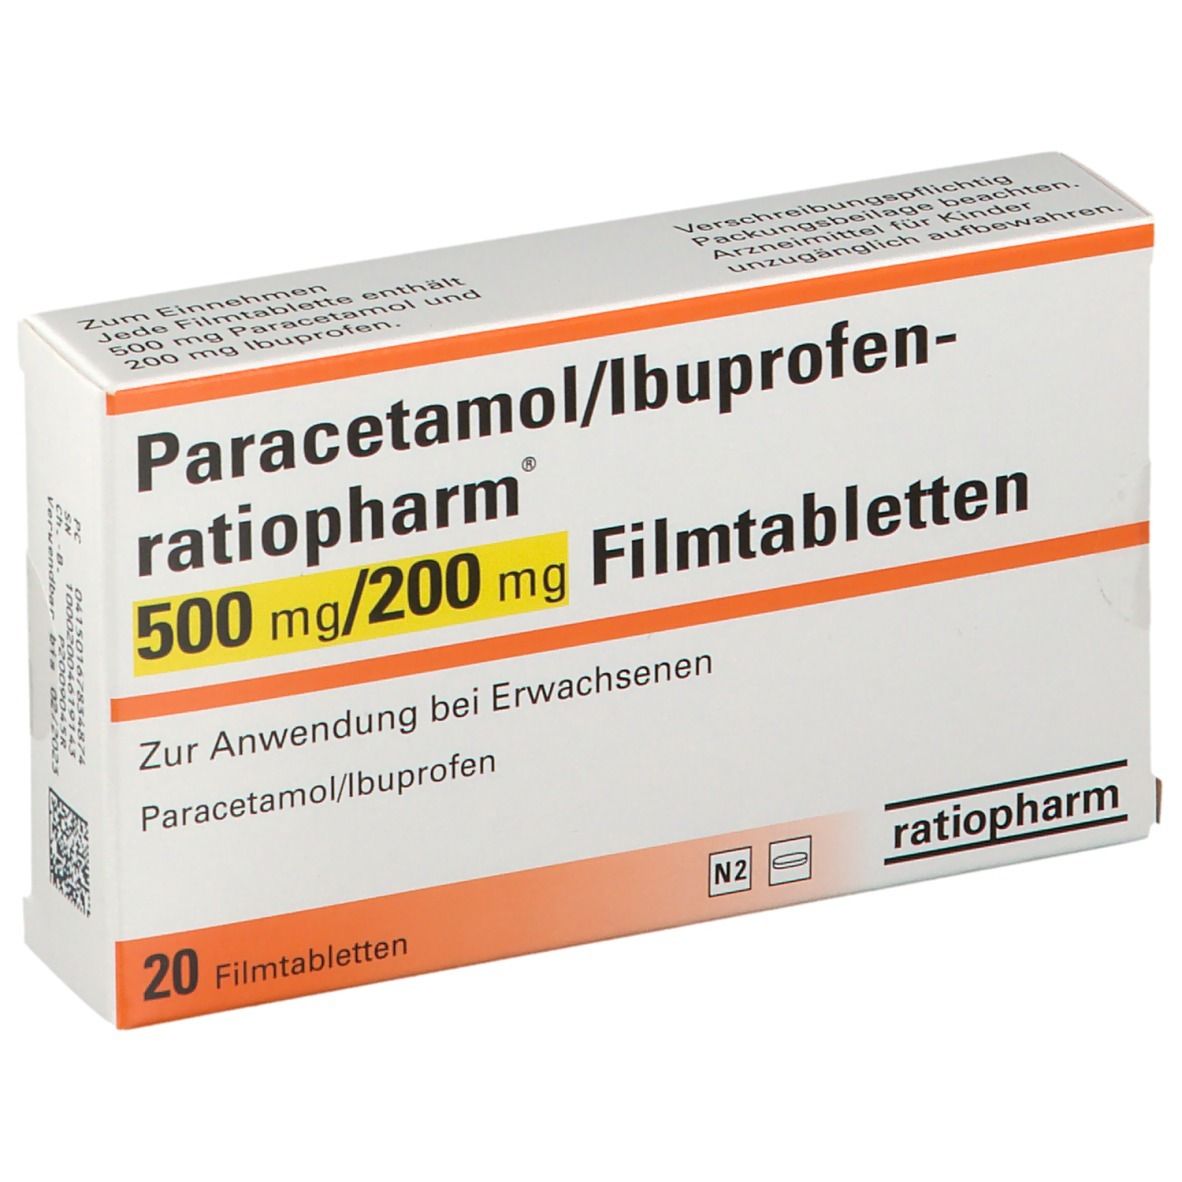 Ibuprofen und paracetamol gleichzeitig nehmen